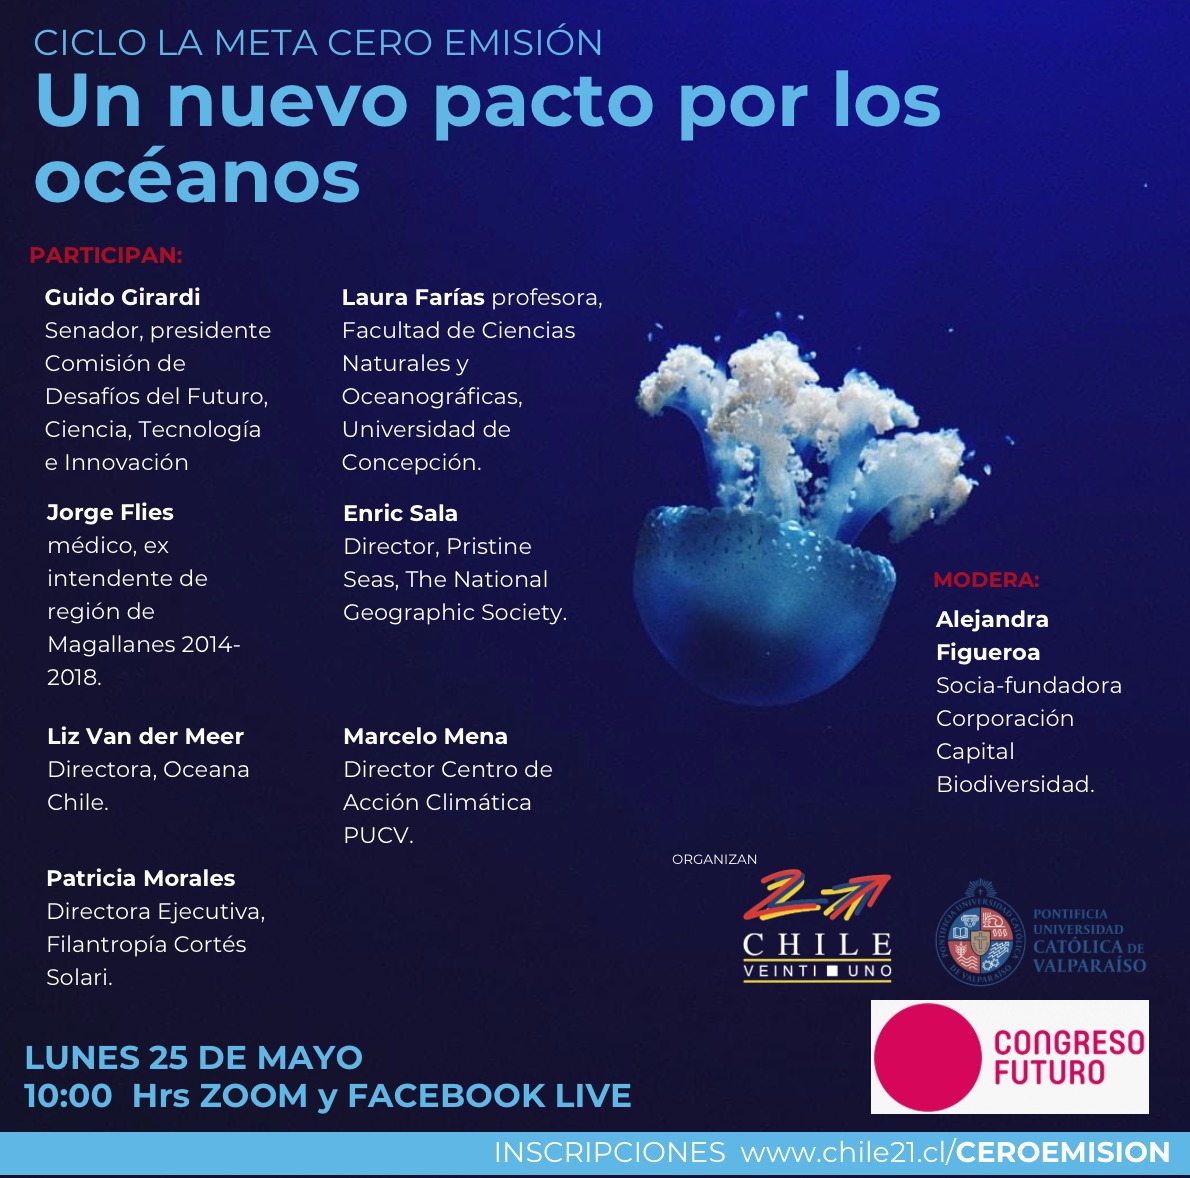 Un nuevo pacto por los océanos. Congreso del Futuro: este lunes 25 de mayo